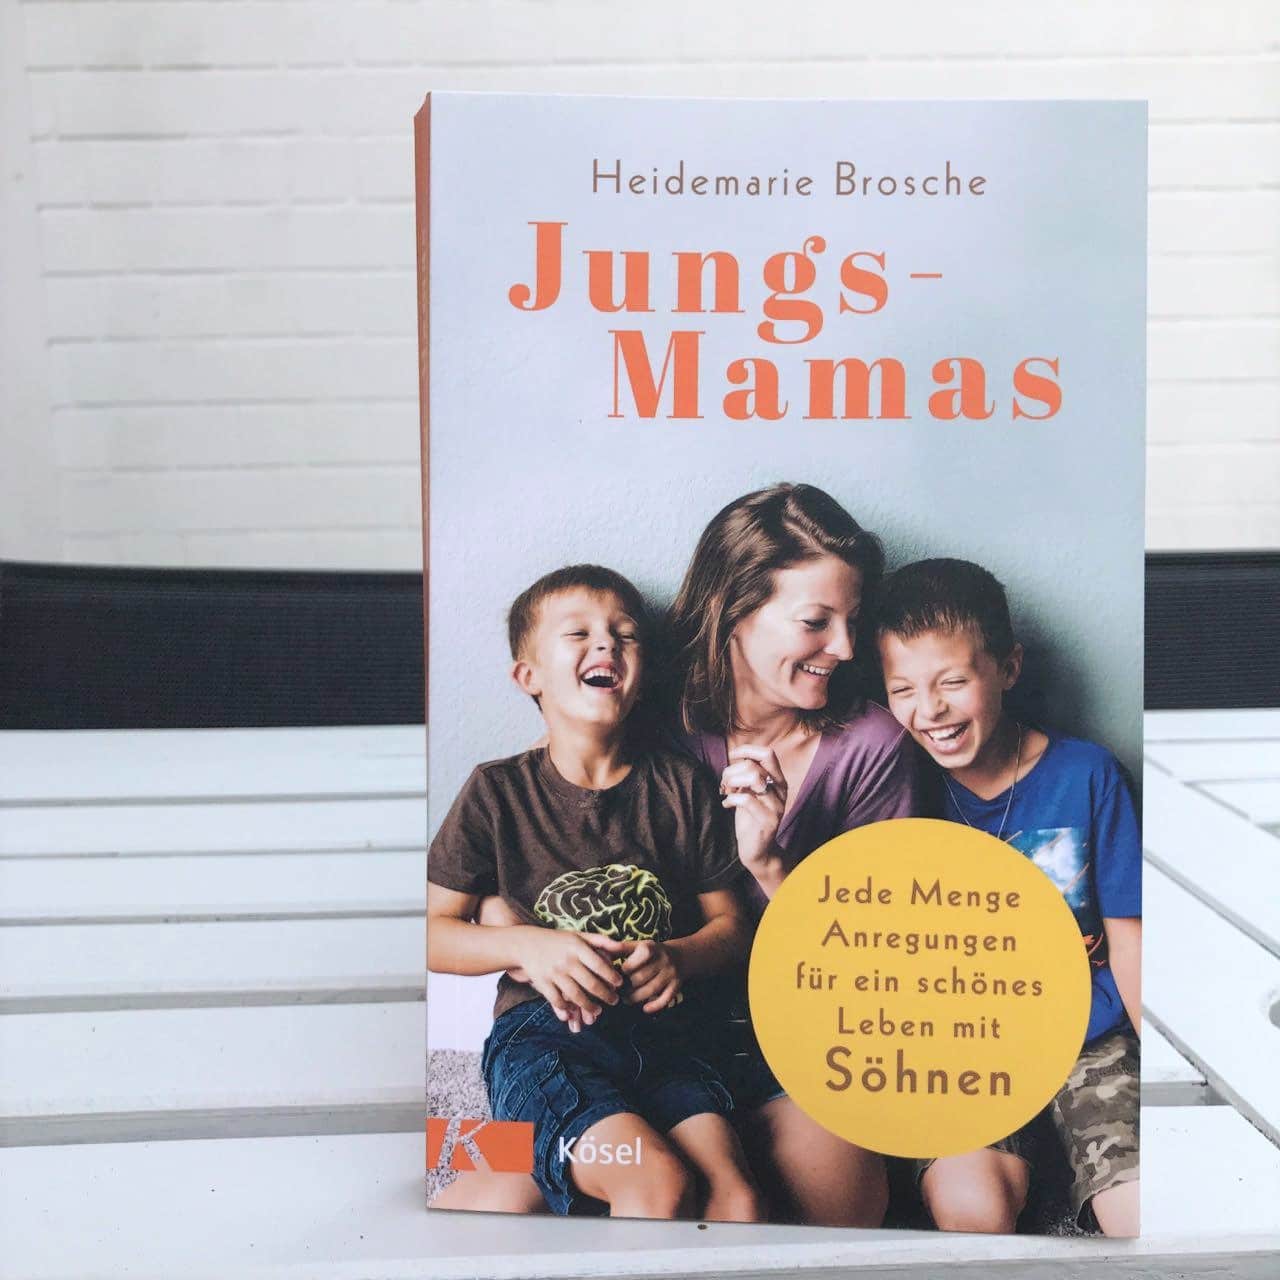 Tipp für Jungs-Mamas: das gleichnamige Buch von Heidemarie Brosche - Mehr Infos auf Mamaskind.de